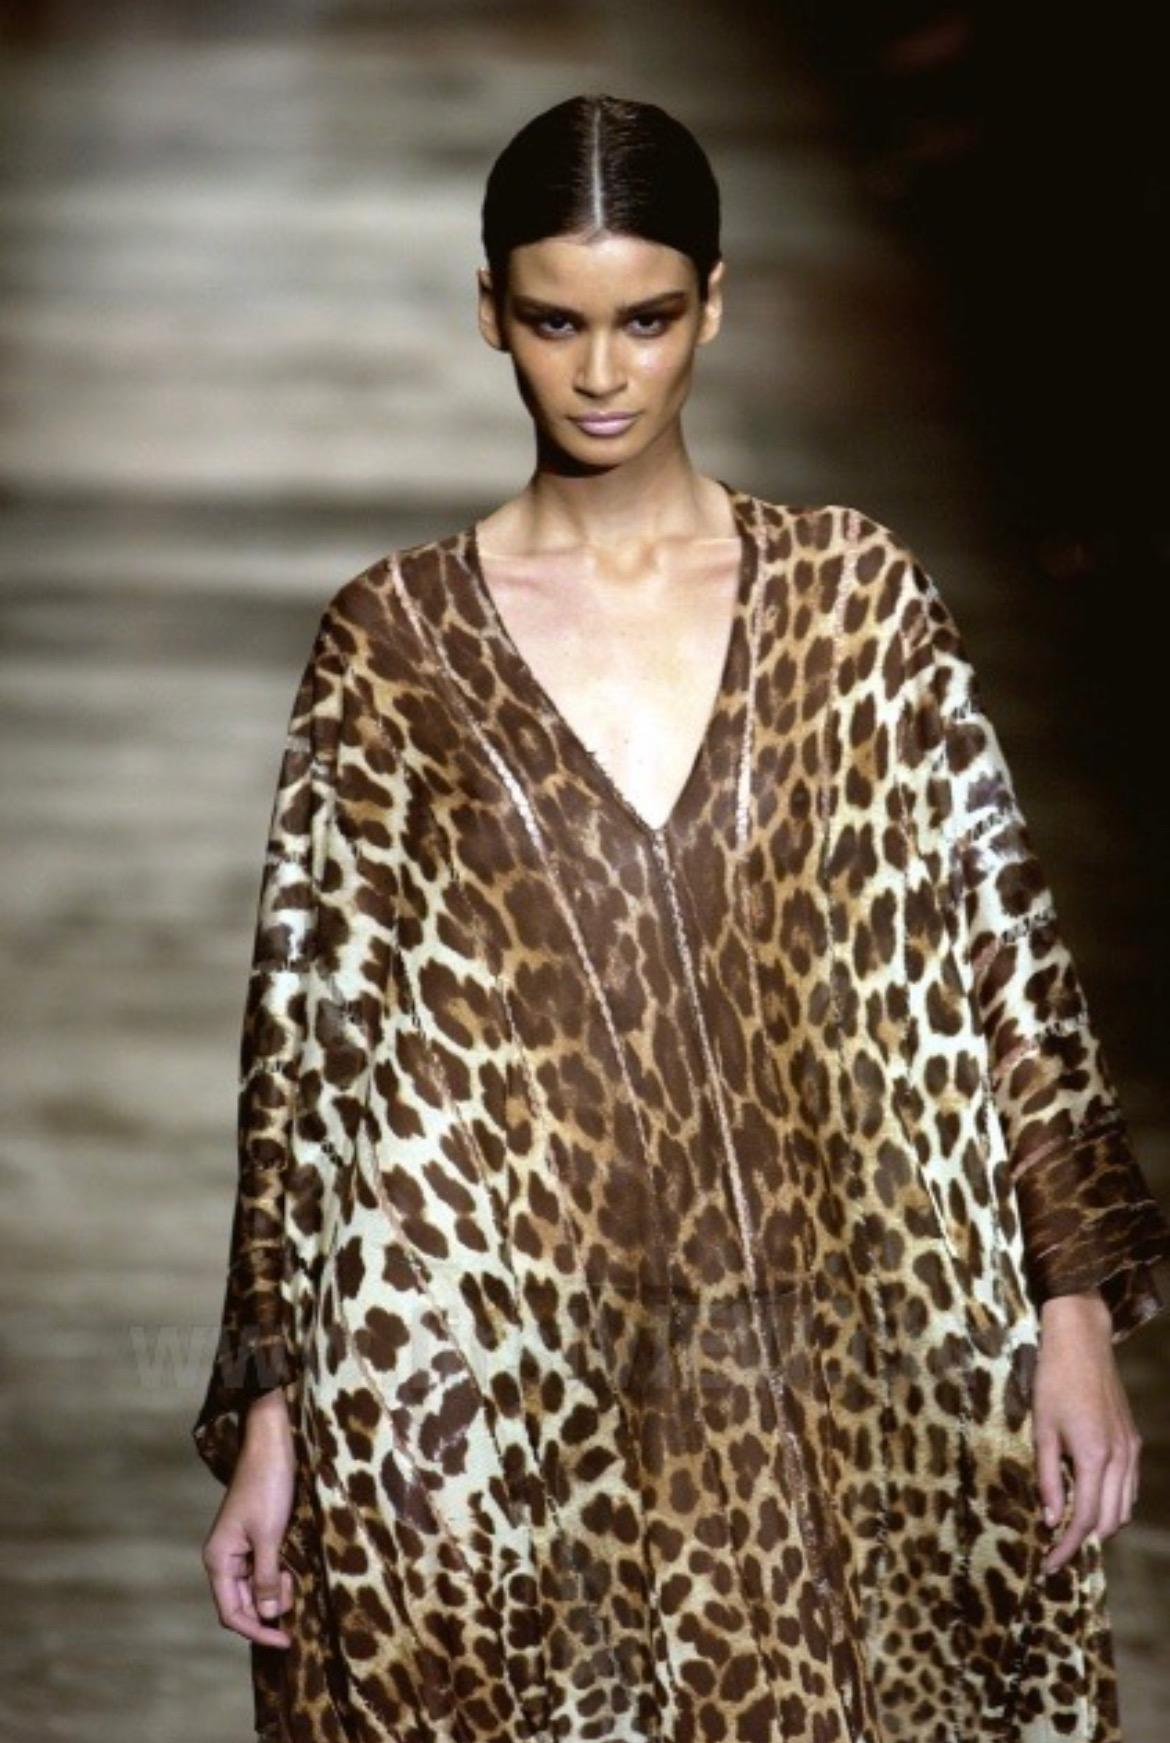 Brown S/S 2002 Yves Saint Laurent by Tom Ford Safari Cheetah Print Sheer Caftan Fringe